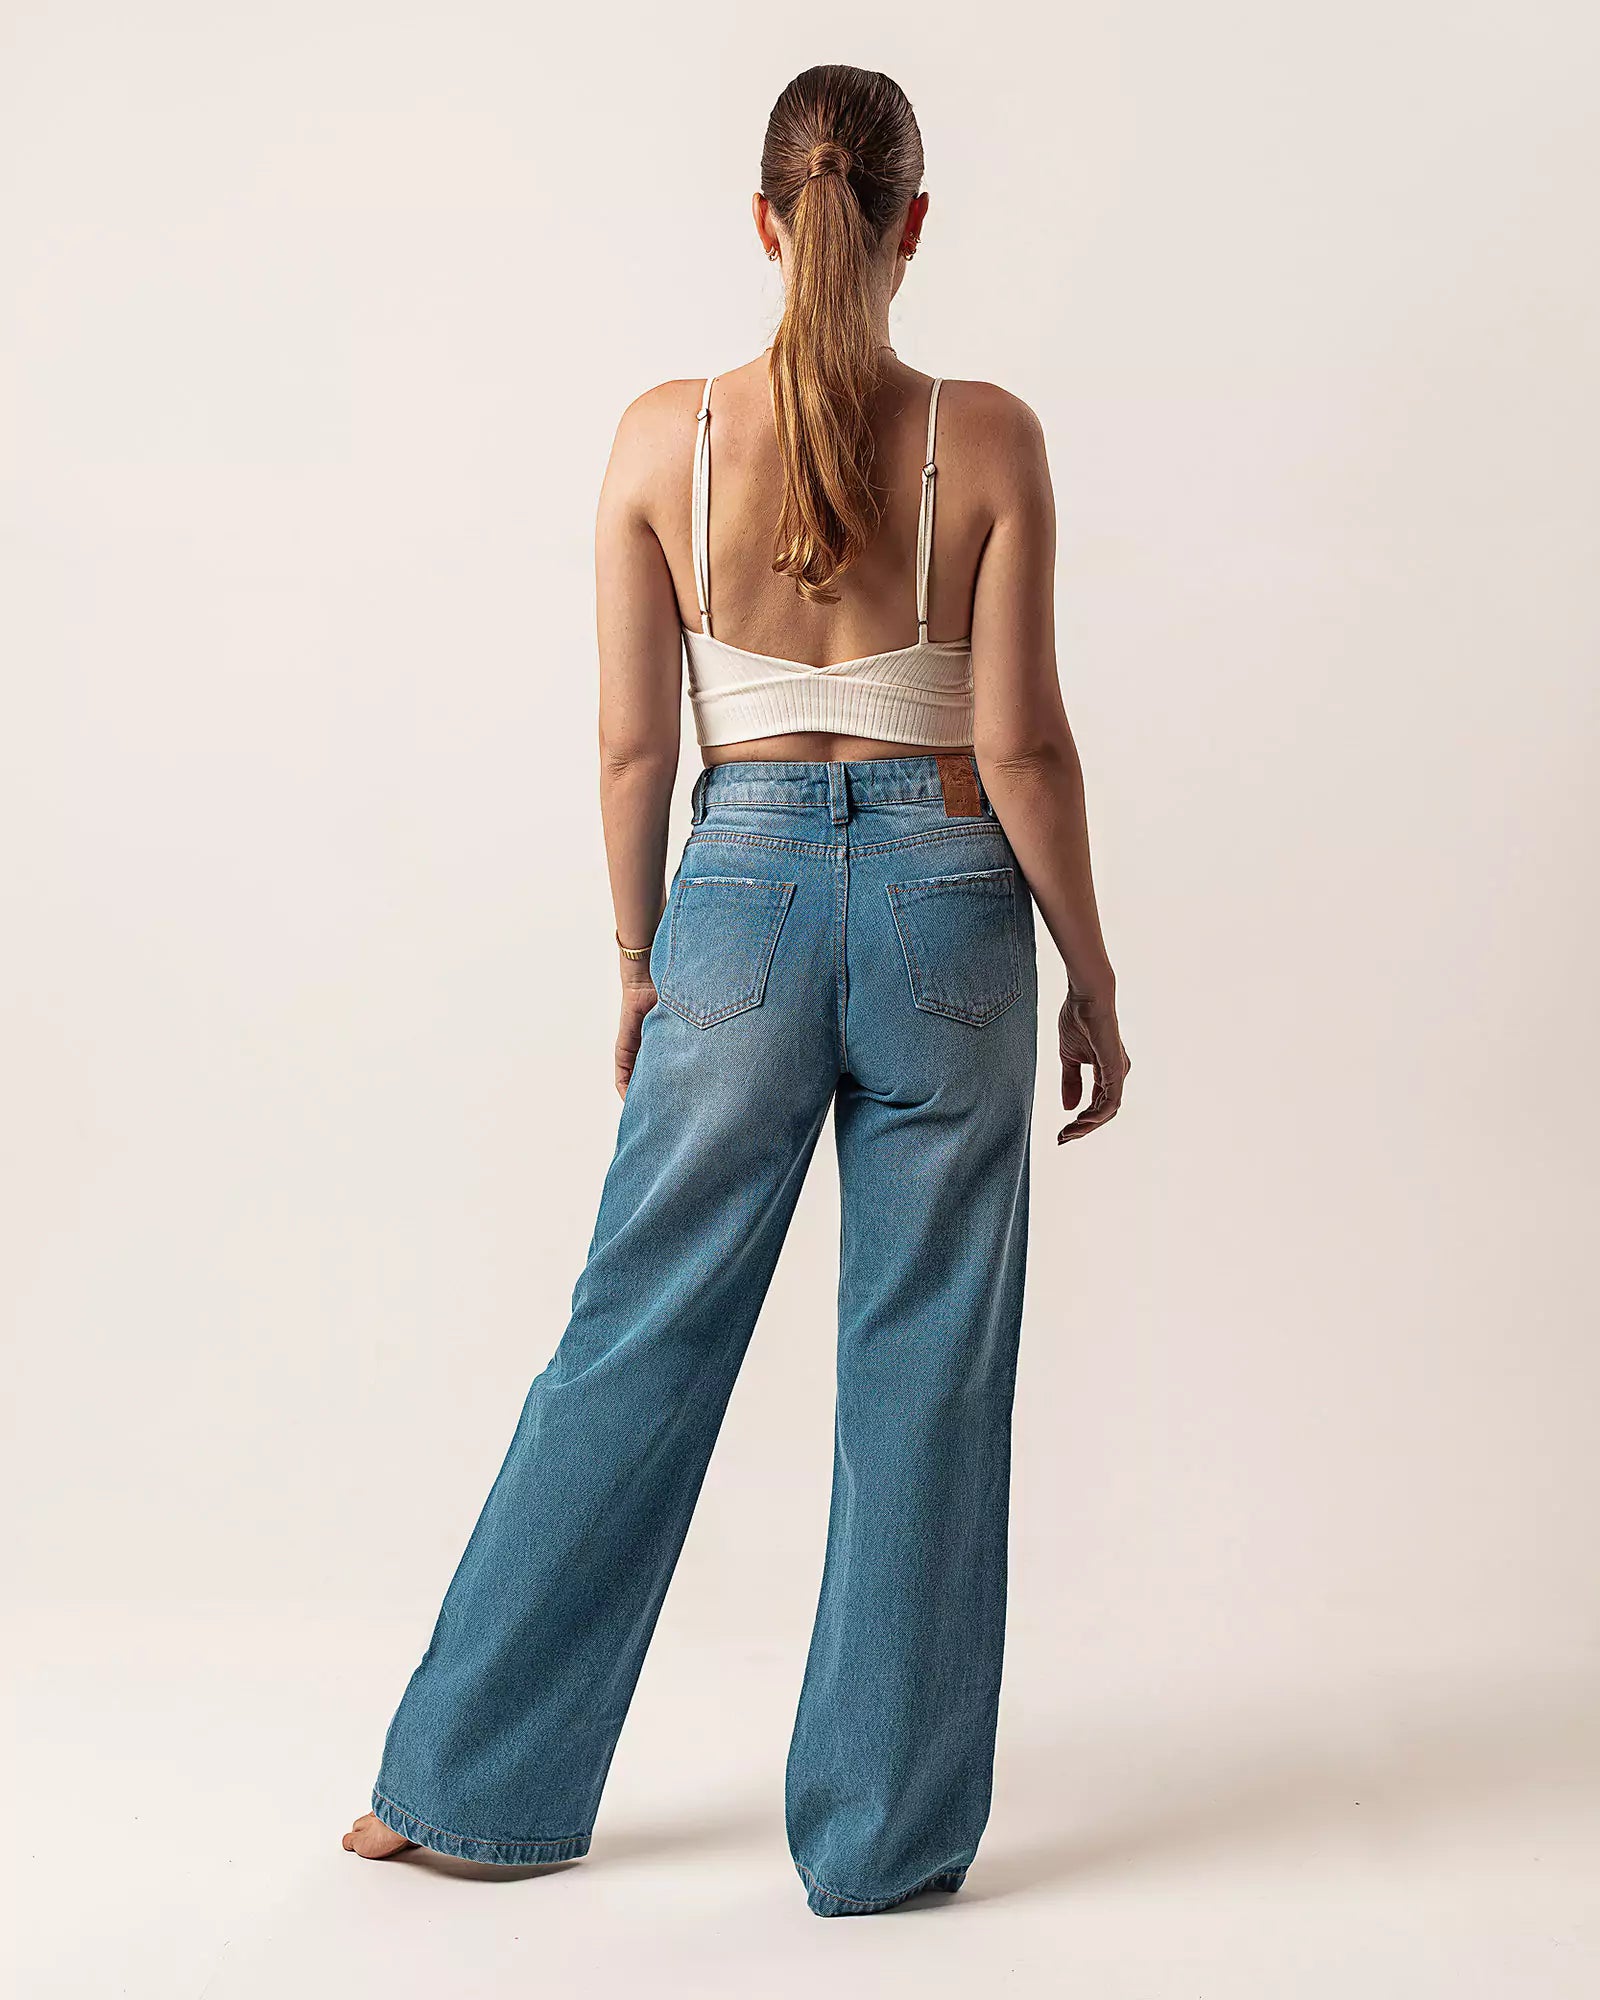 Calça Wide Leg com Rasgos Jeans Azul Médio Eco Denim™. Compre online moda sustentável e atemporal na Minimadeia. Roupas femininas estilosas, básicas e sustentáveis. Foto produto 05